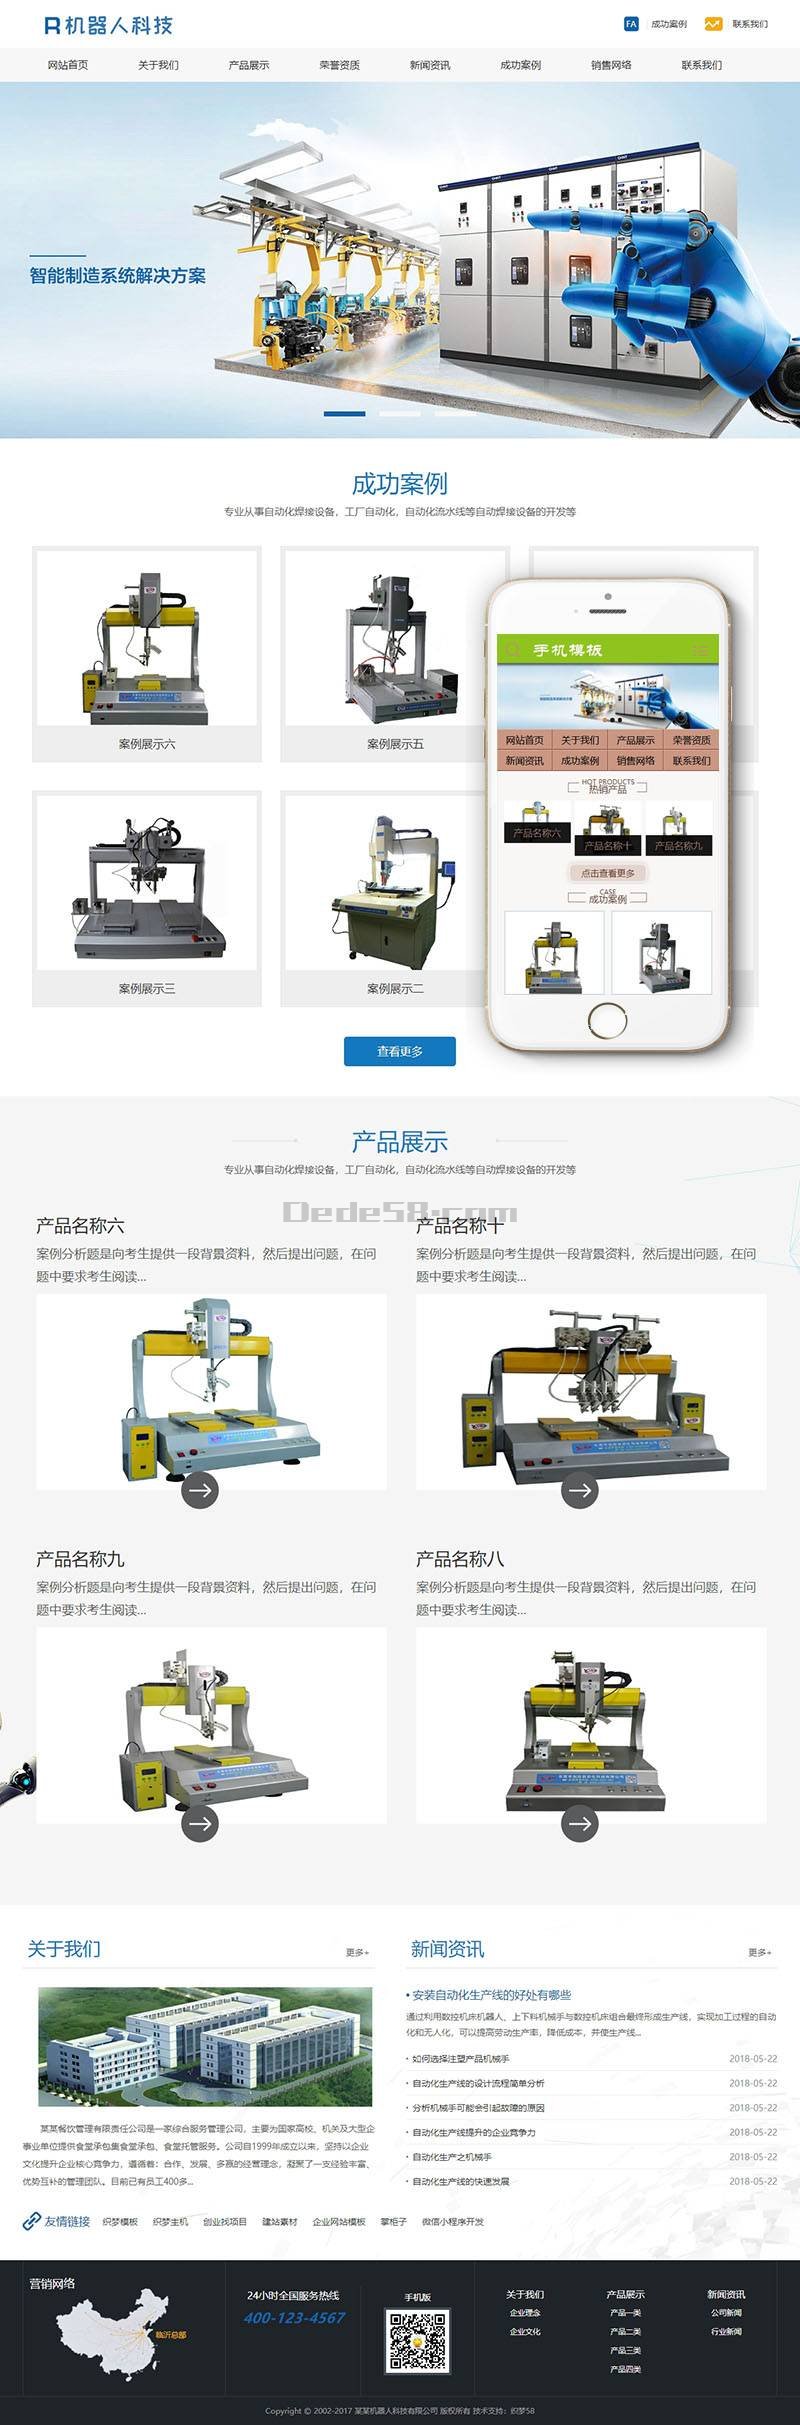 【徐州网站建设】自动化机器人科技类网站制作开发案例